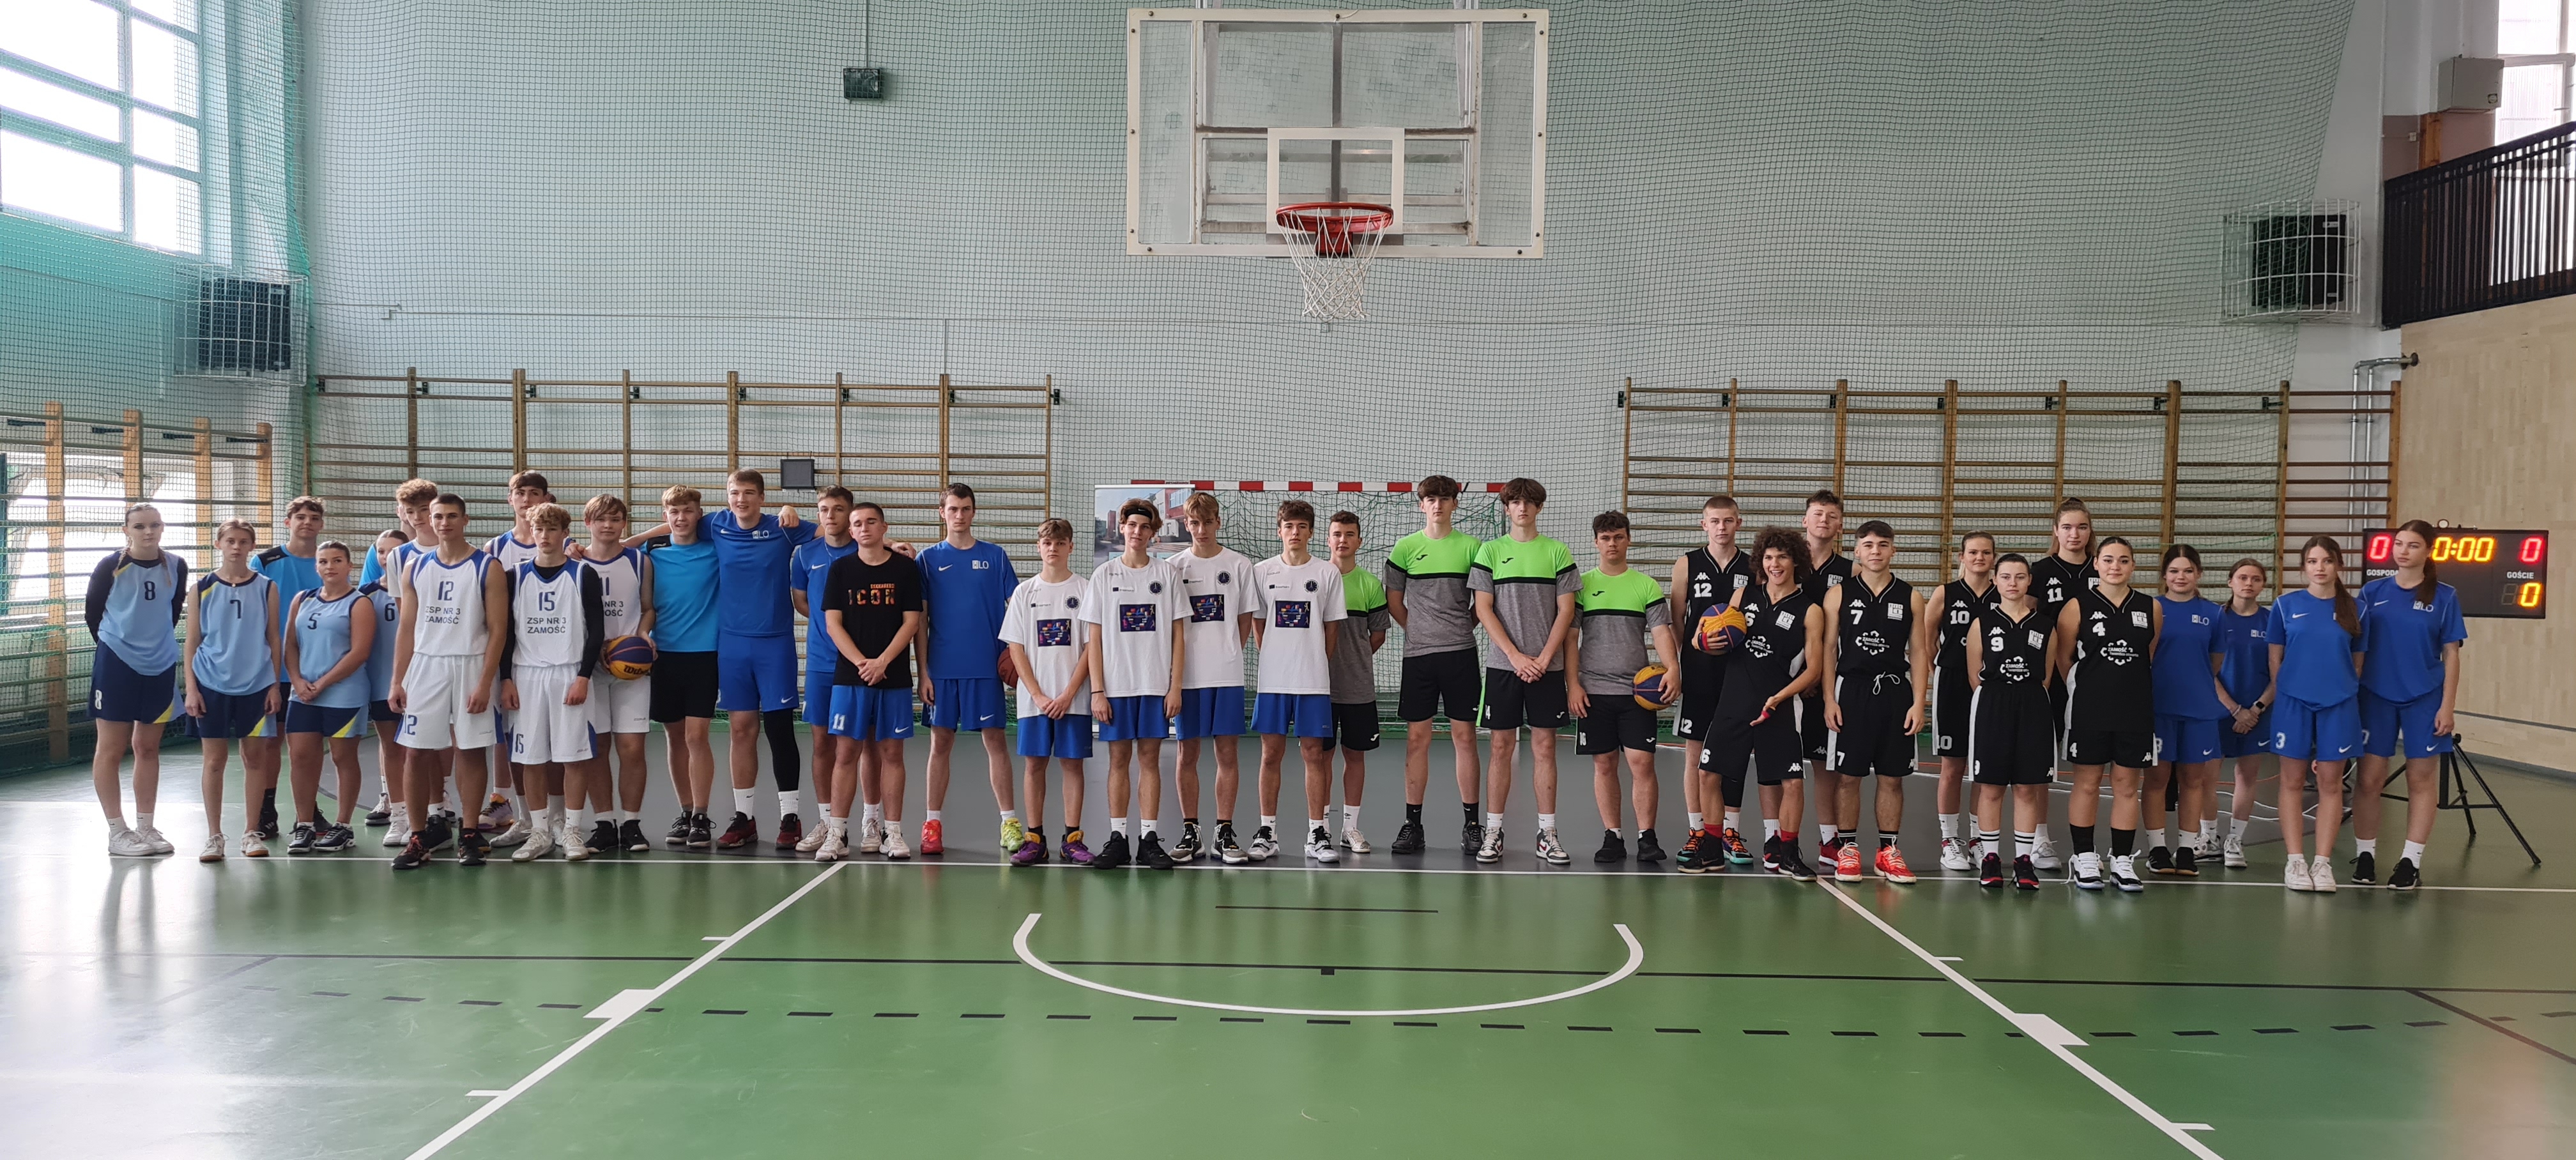 Podsumowanie Zamojskiej Ligi Koszykówki 3x3 dla uczniów szkół ponadpodstawowych